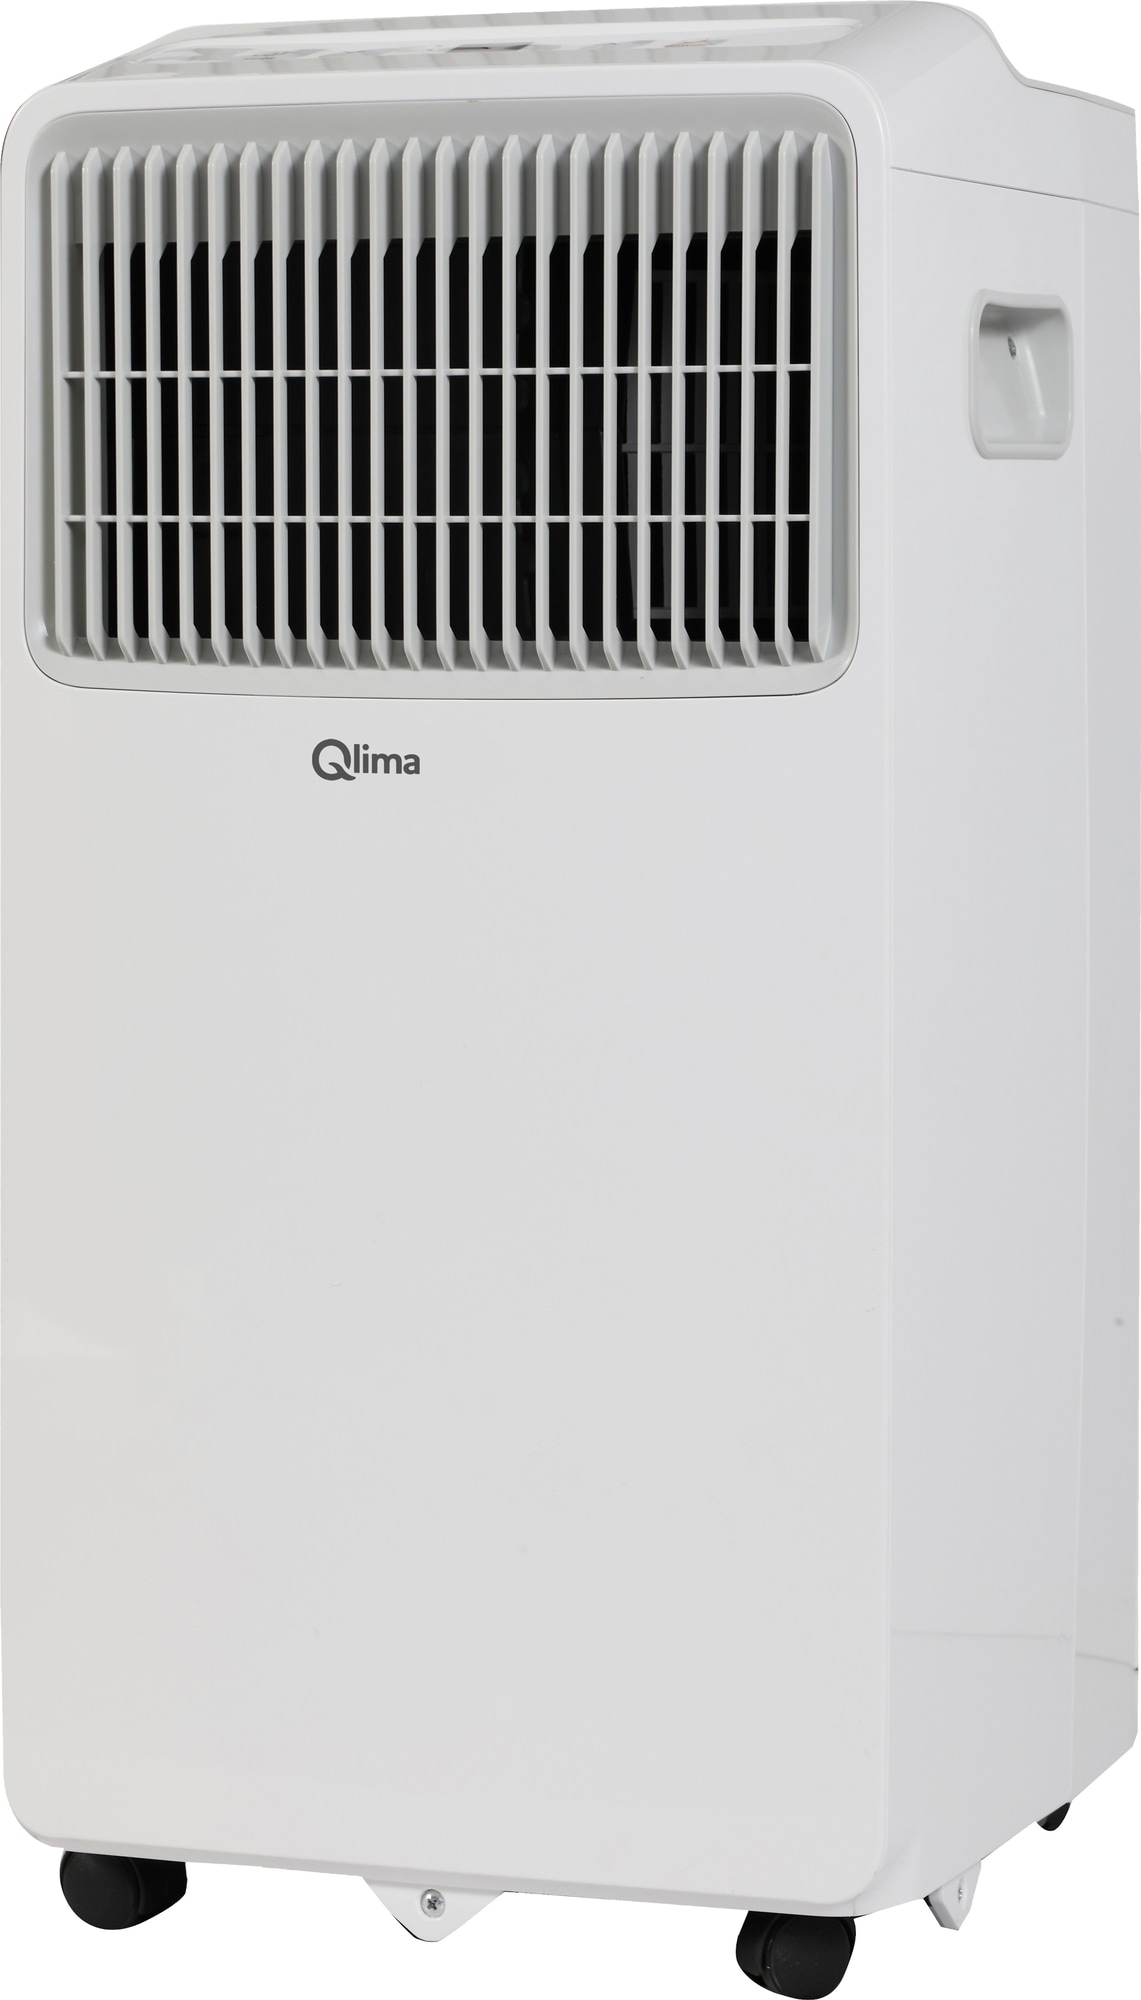 Qlima siirrettävä ilmastointilaite P420 - Gigantti verkkokauppa